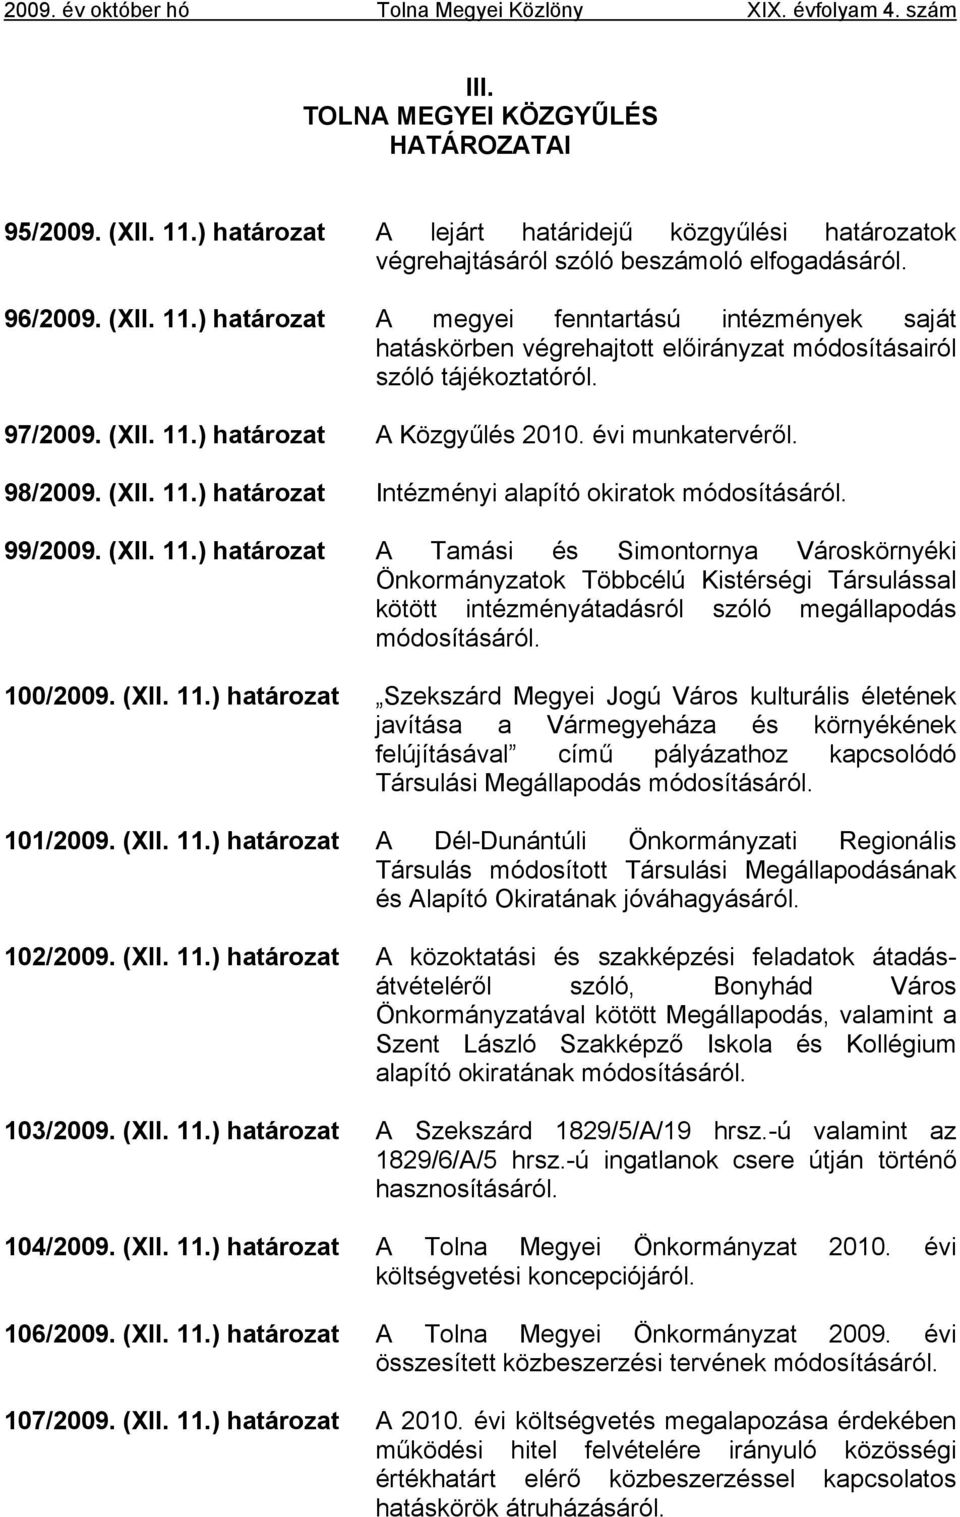 100/2009. (XII. 11.) határozat Szekszárd Megyei Jogú Város kulturális életének javítása a Vármegyeháza és környékének felújításával című pályázathoz kapcsolódó Társulási Megállapodás módosításáról.